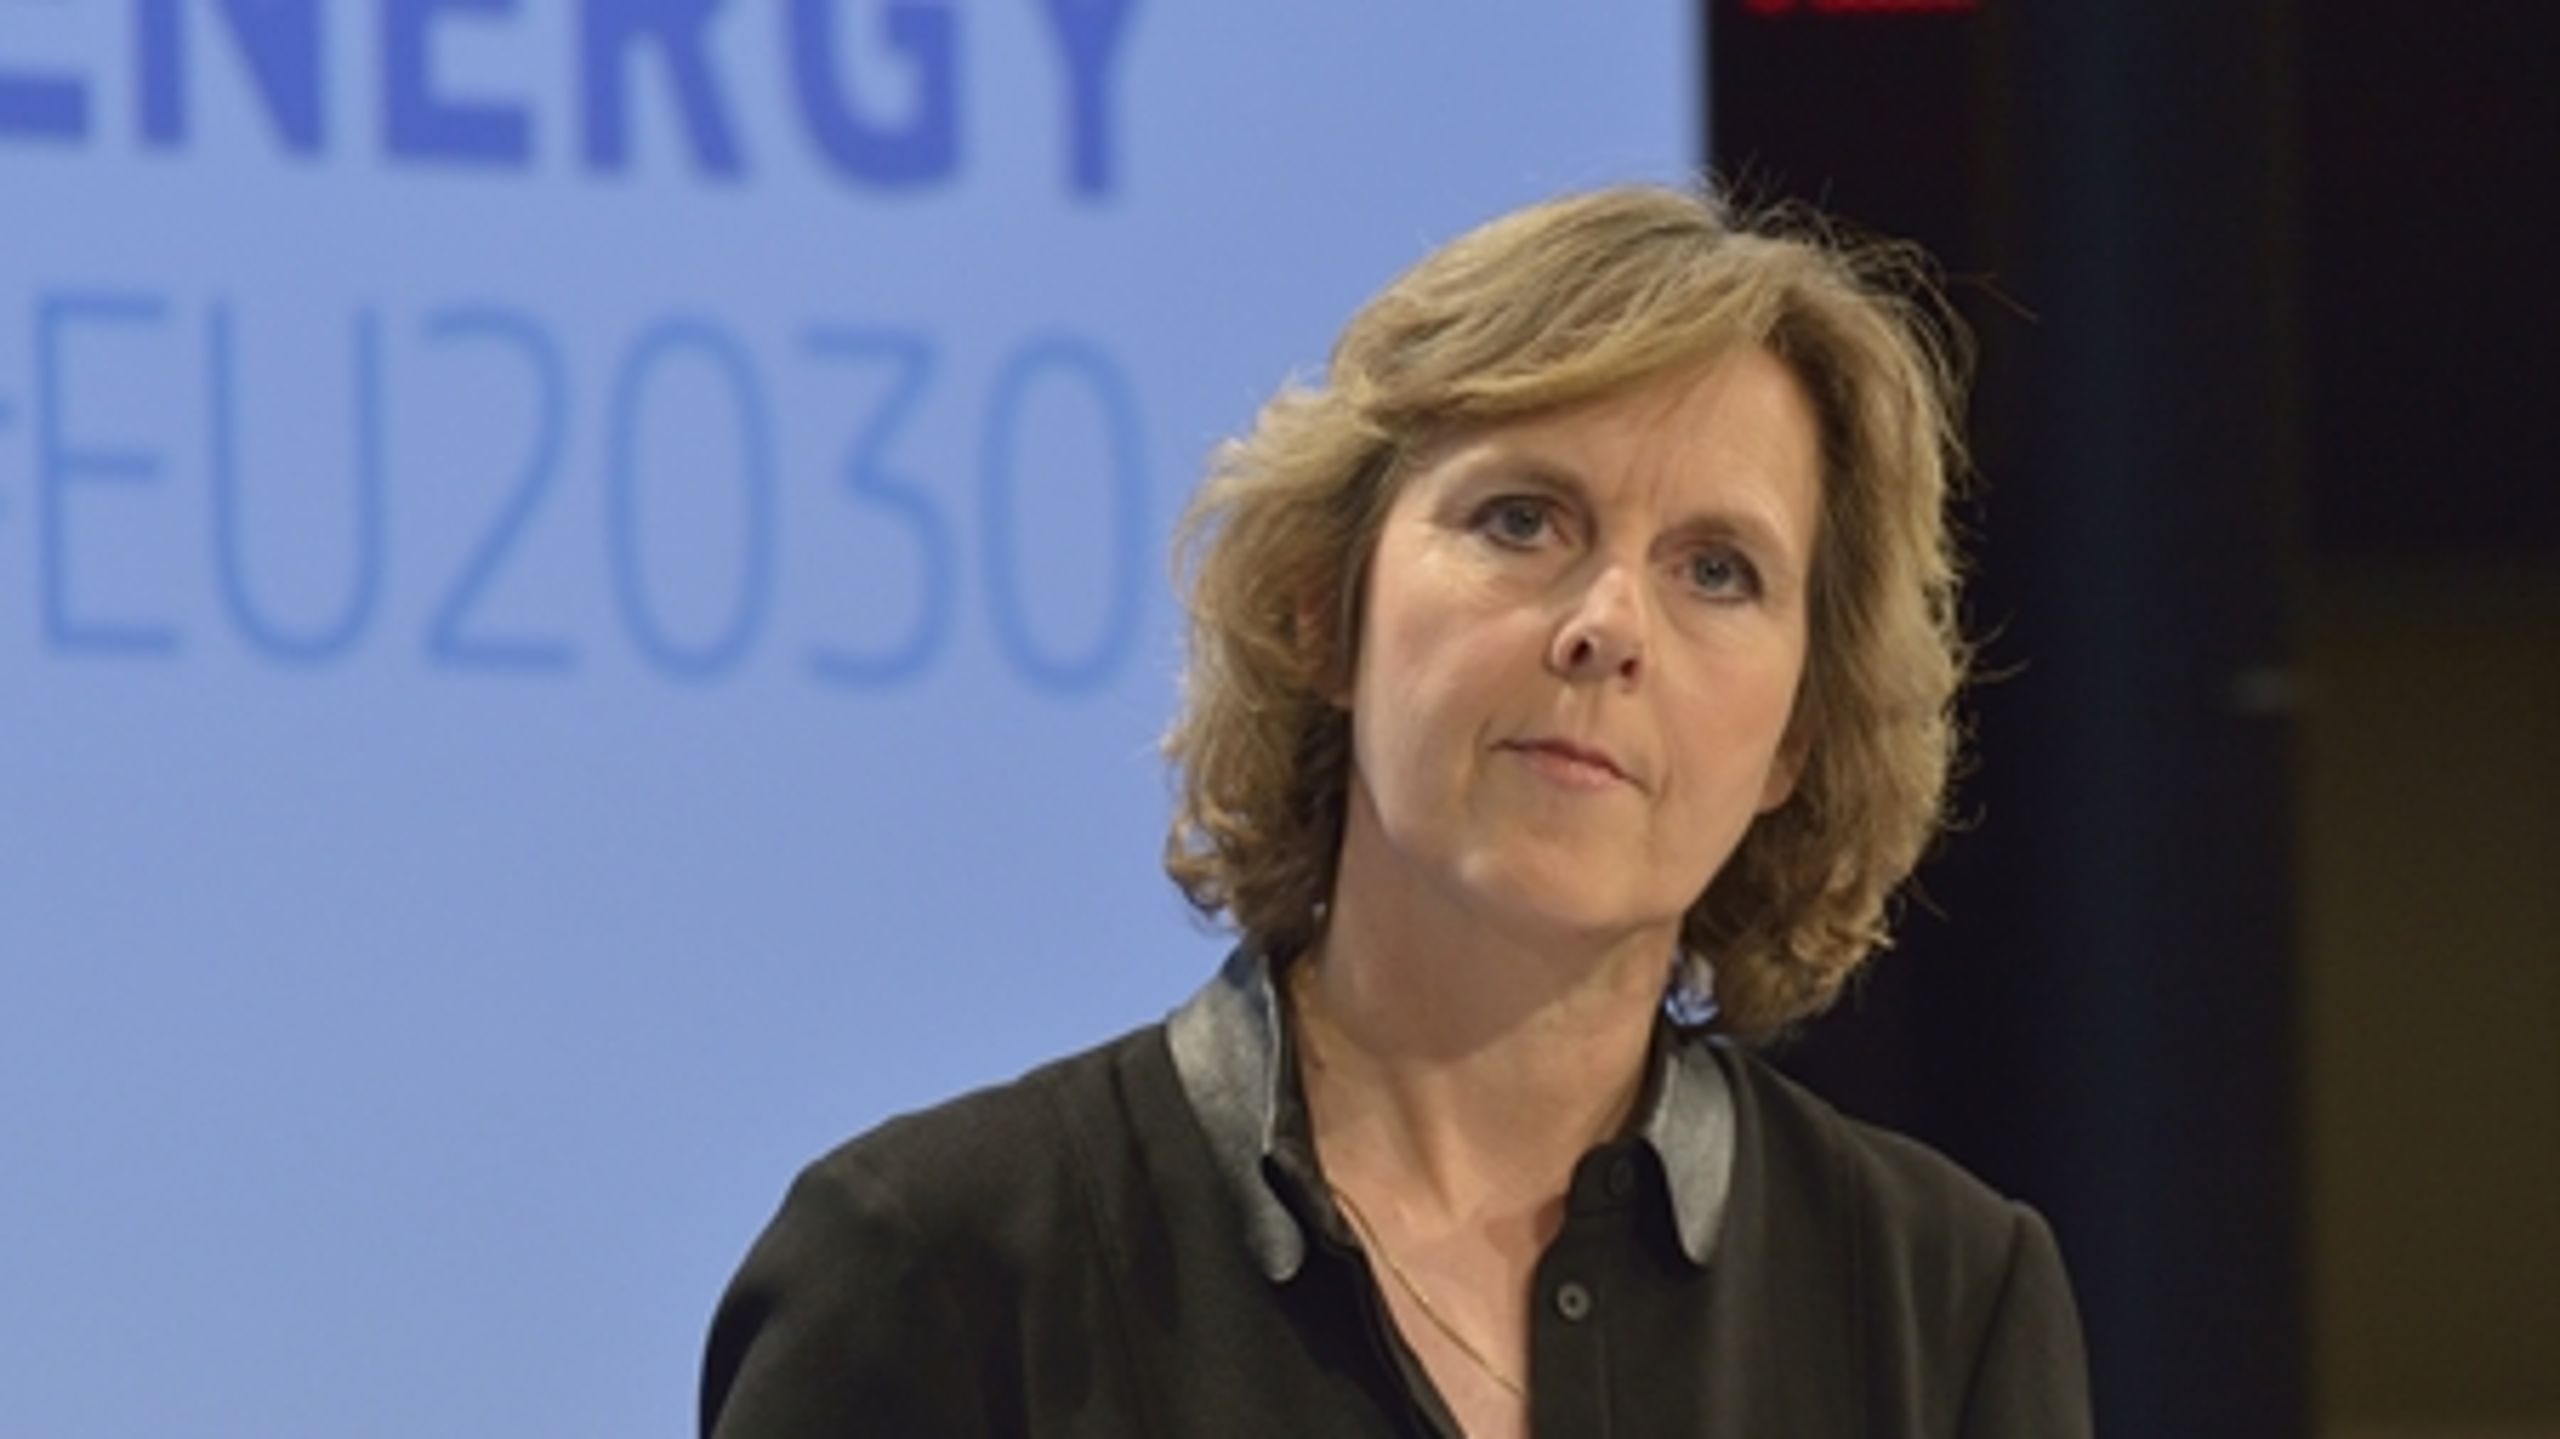 Konkrete udspil til reduktion af CO2-udledning i USA er glædeligt nyt for klimadagsordenen, skriver EU-klimakommissær Connie Hedegaard.